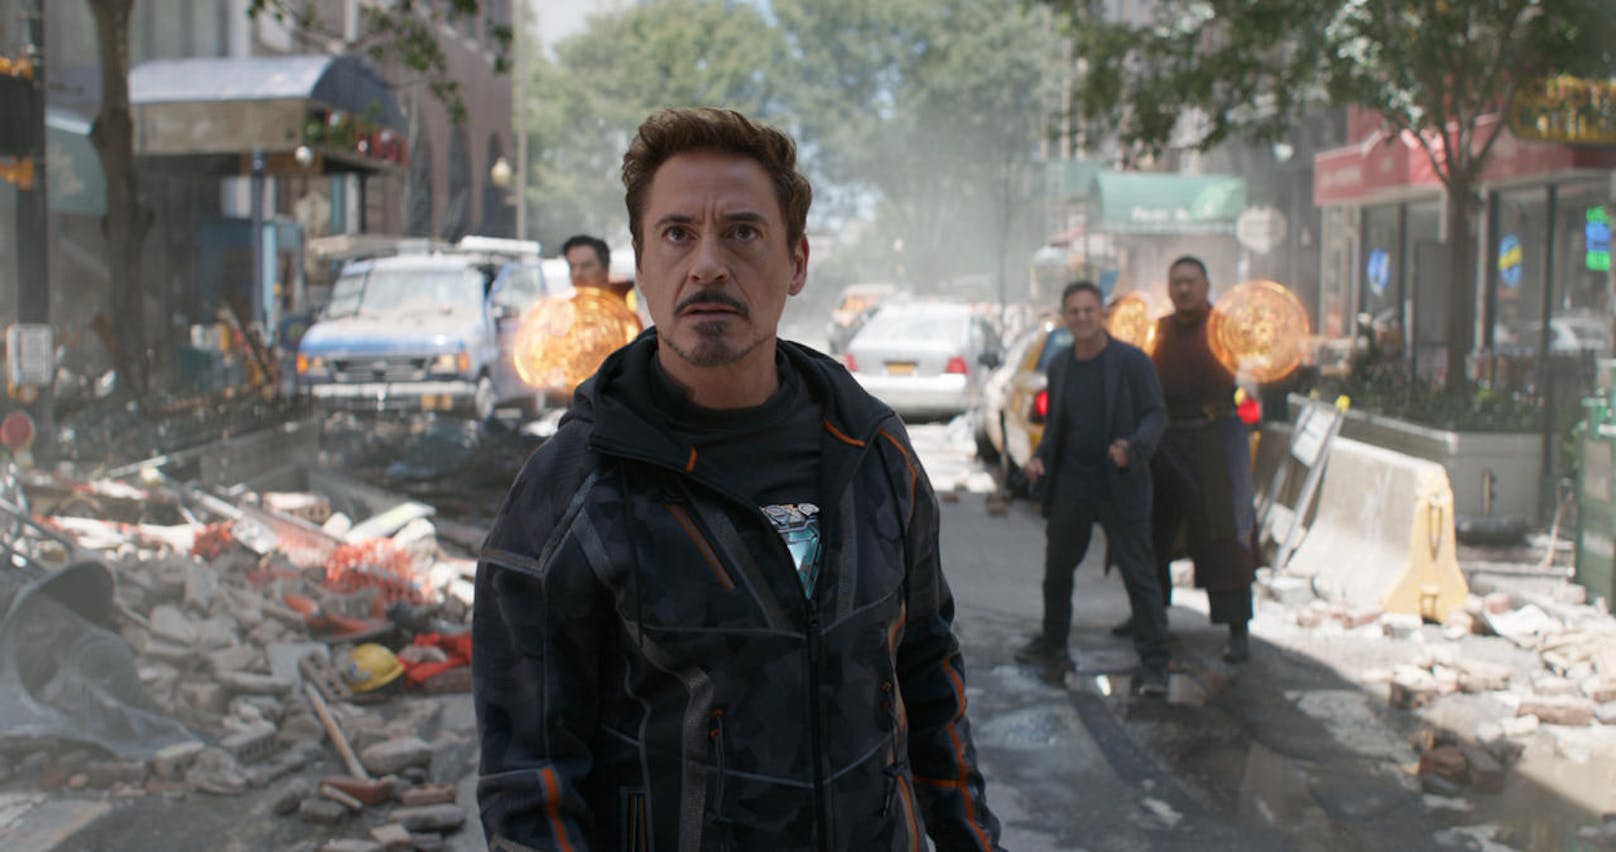 Robert Downey Jr. (vorne) als Iron Man in "Avengers: Infinity War"